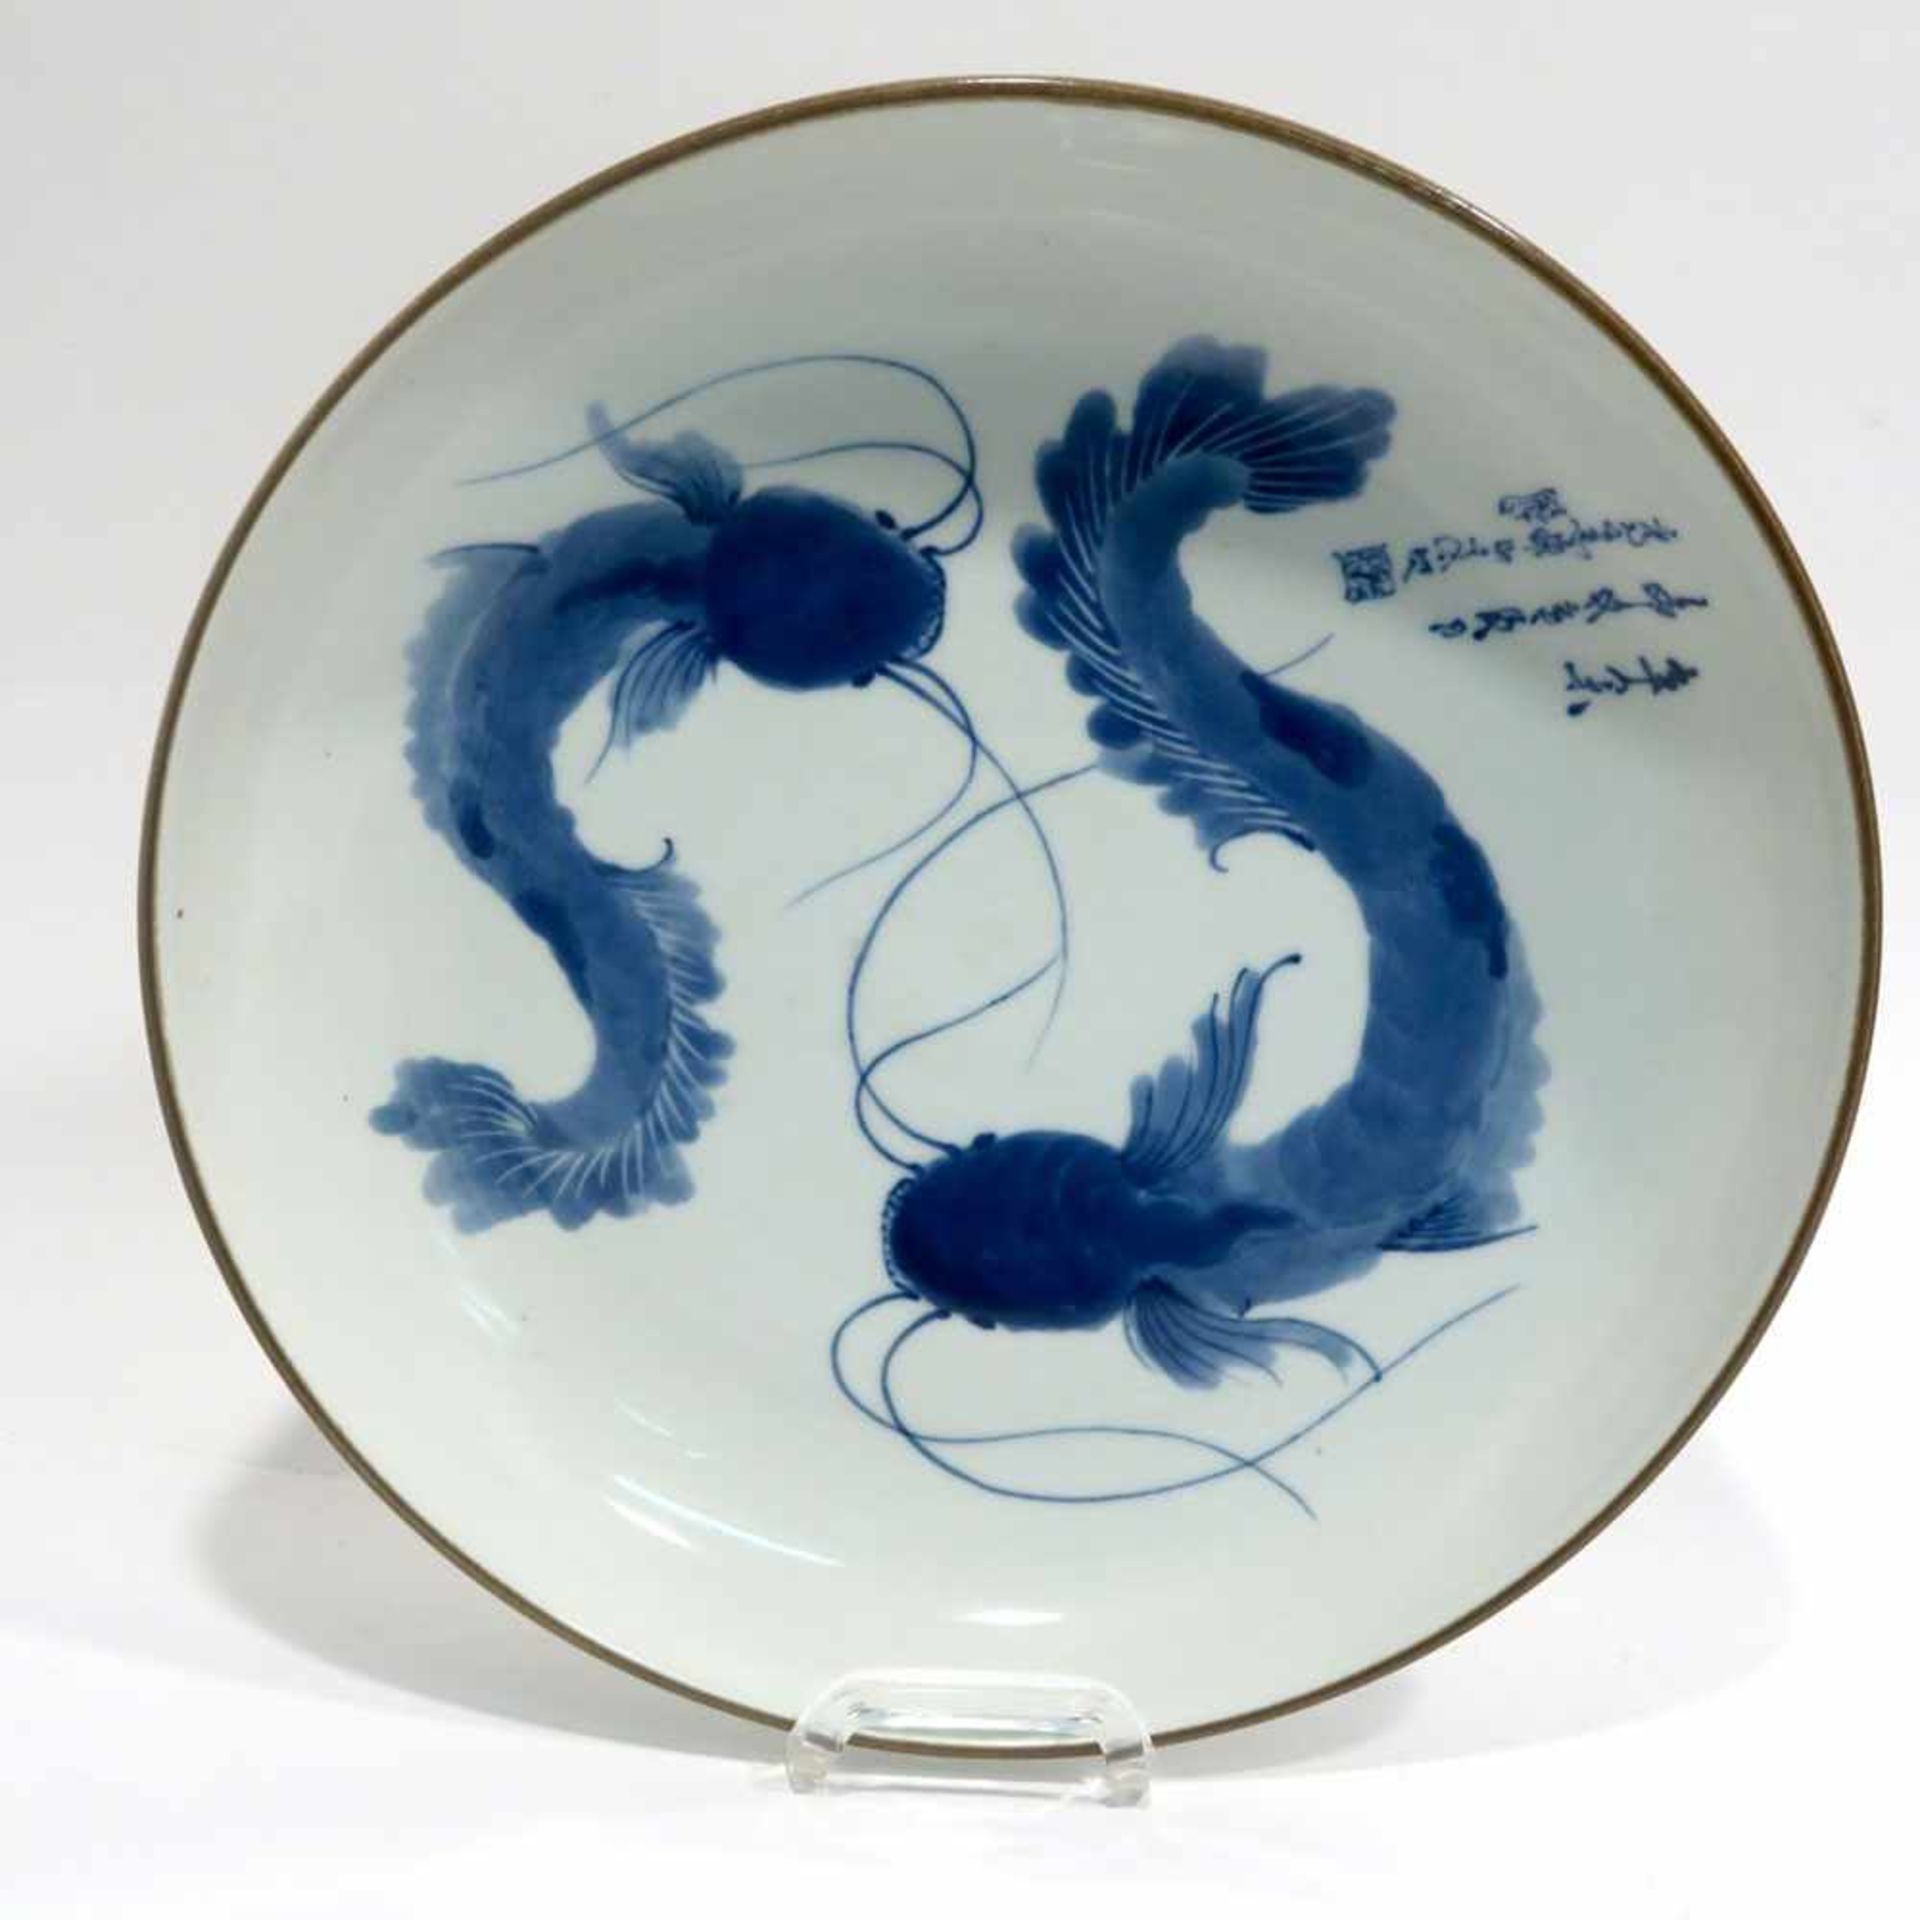 SchalePorzellan. Blaudekor: zwei Fische, Inschrift. Brauner Rand. Blaumarke. Ø 26 cm.